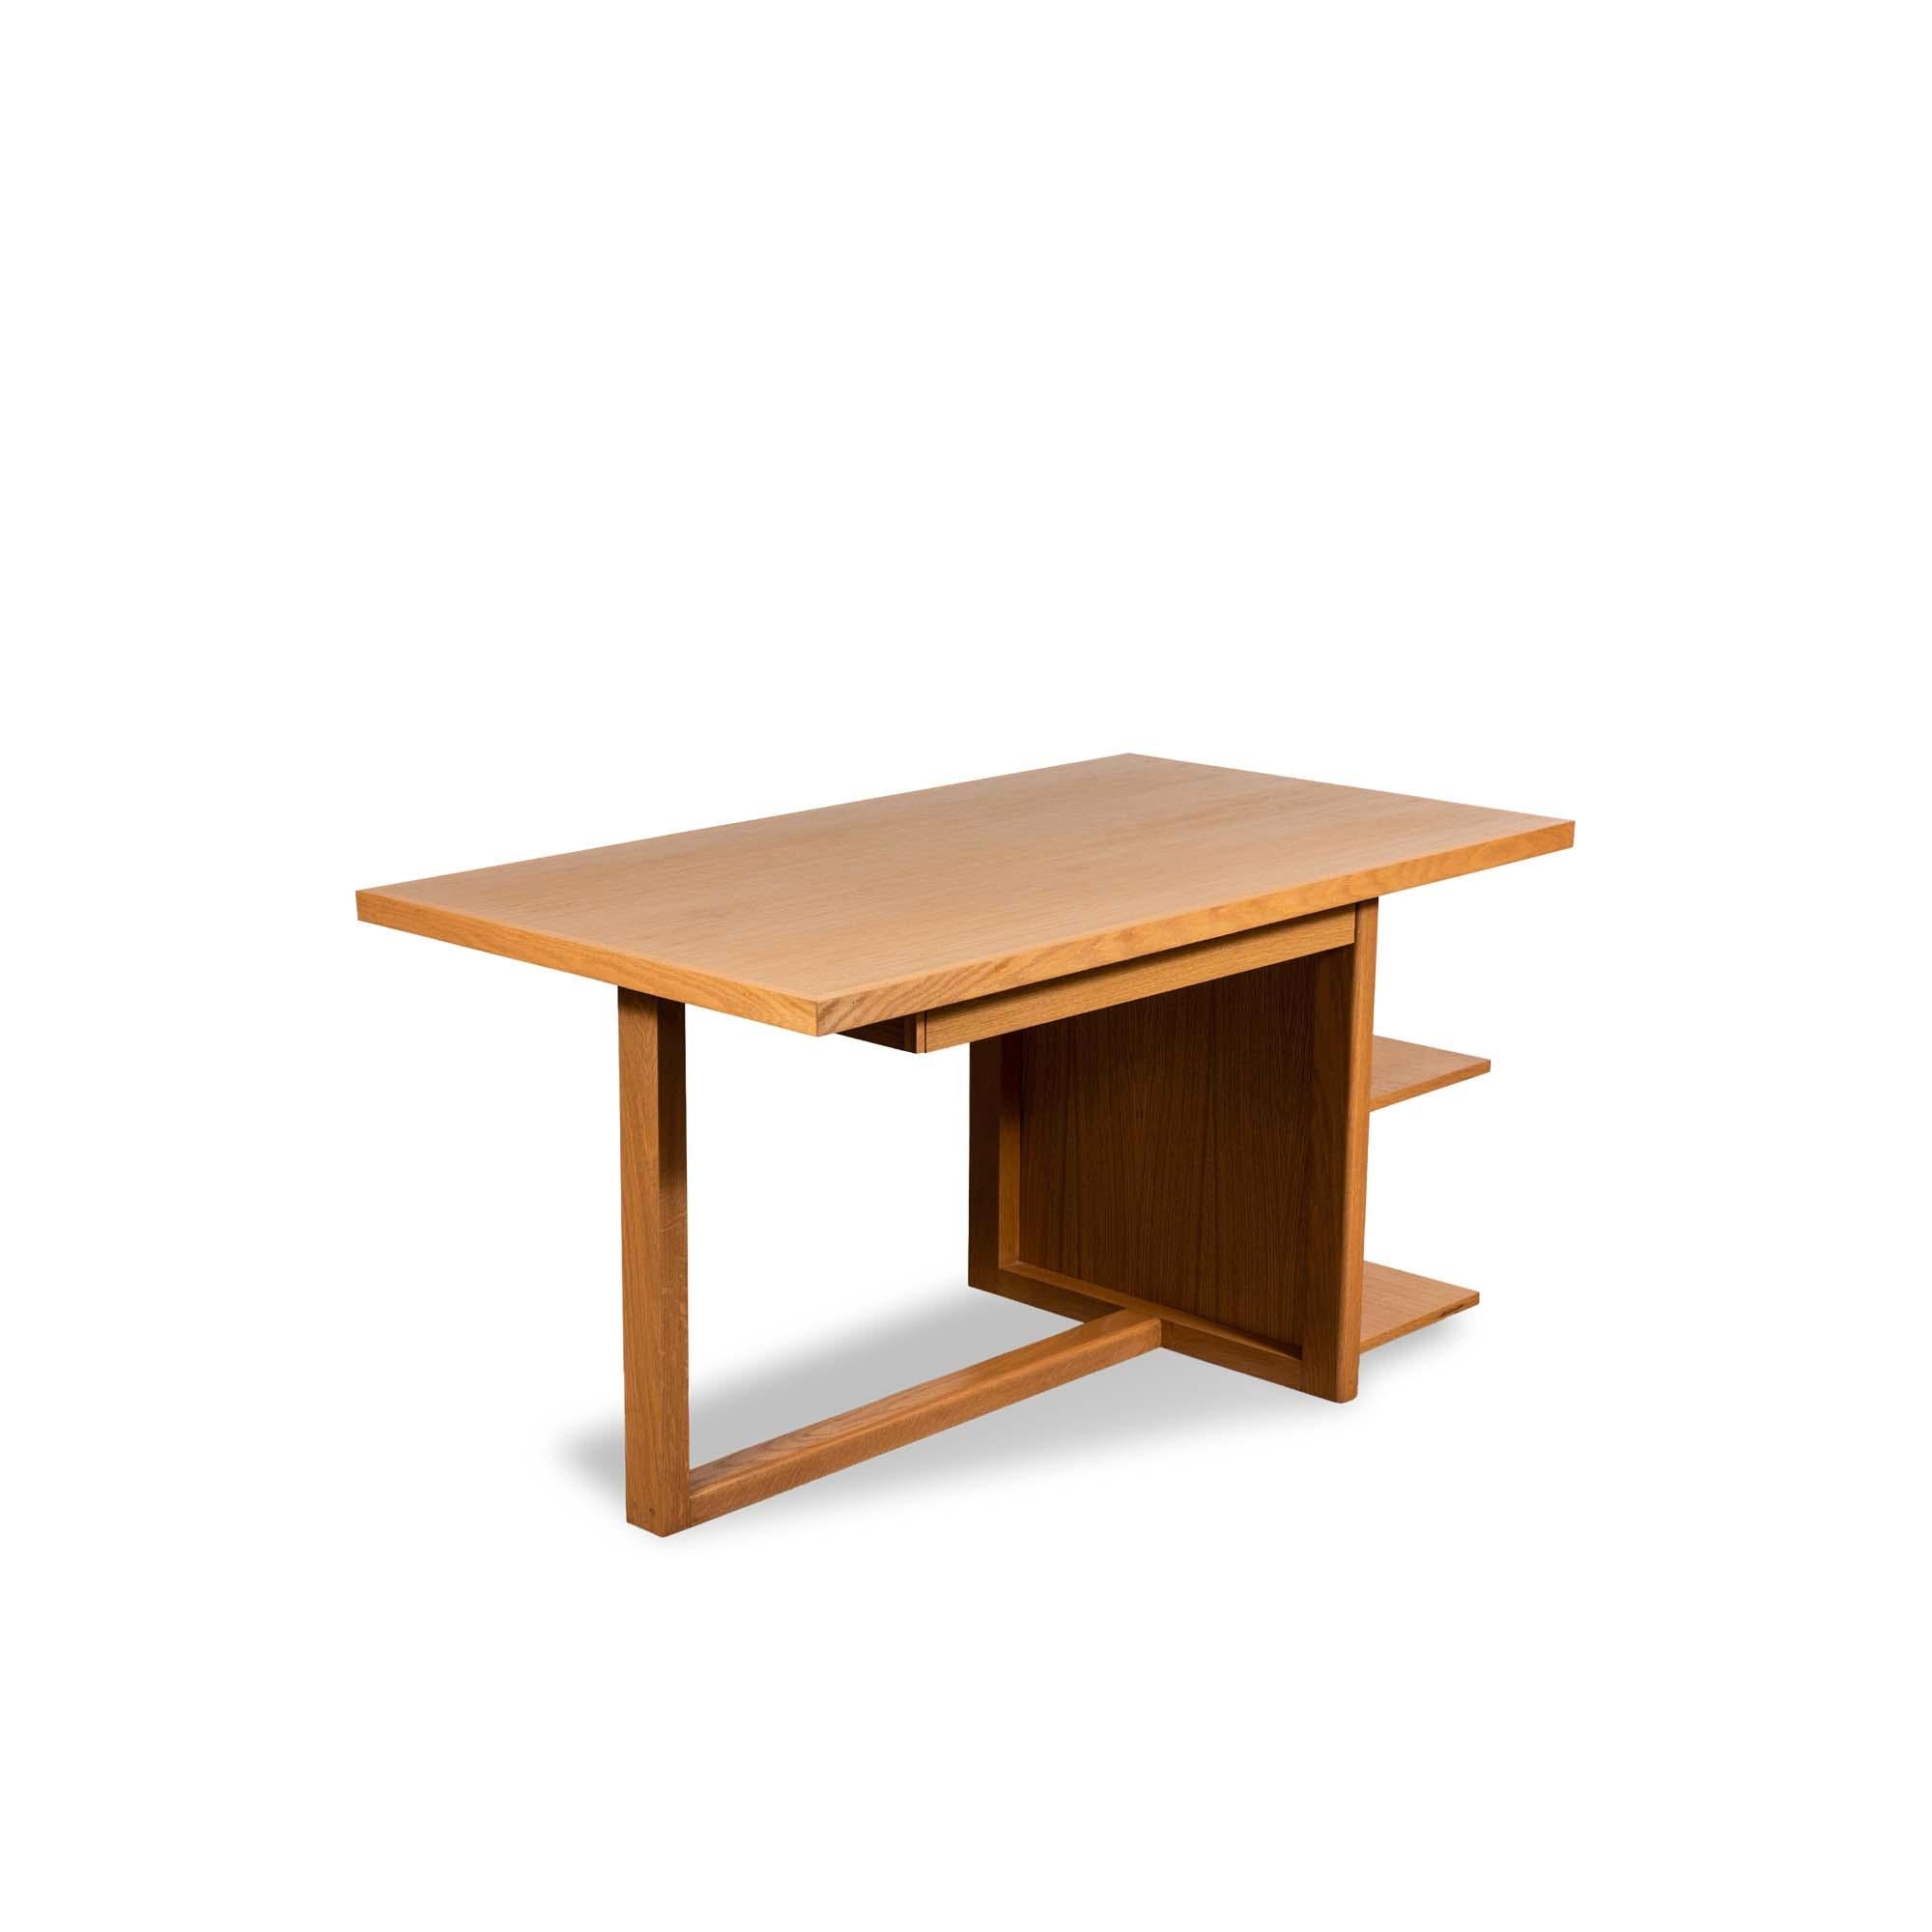 Der Schreibtisch Ivanhoe verfügt über einen freitragenden Sockel mit offenen Ablageflächen. Erhältlich in amerikanischem Nussbaum oder Weißeiche, Schubladen sind auf Anfrage erhältlich. 

Die Lawson-Fenning Collection'S wird in Los Angeles,